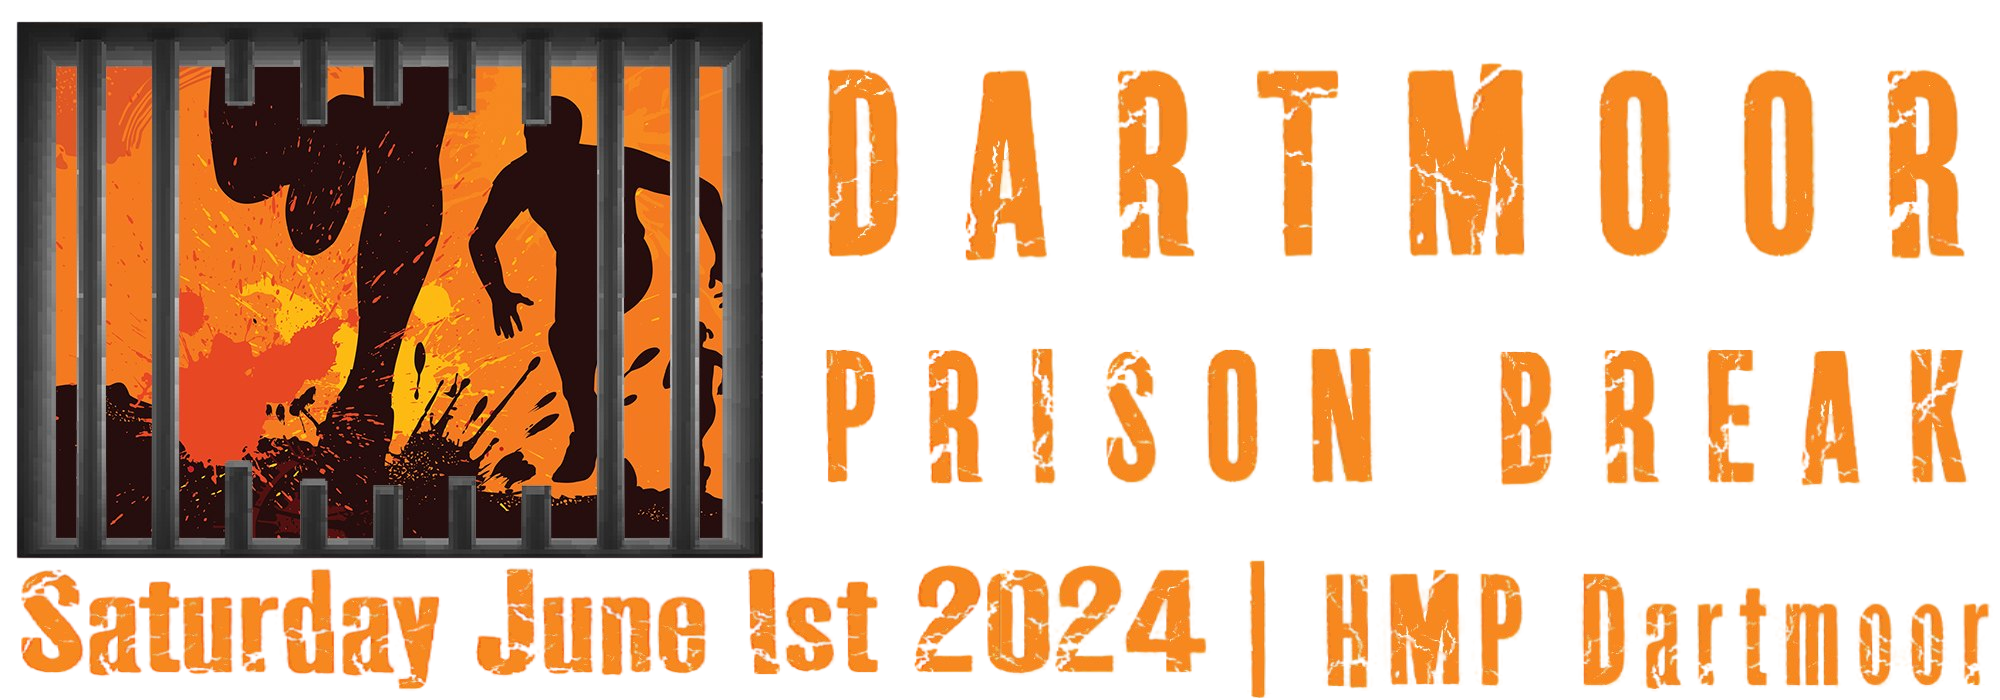 Dartmoor Prison Break